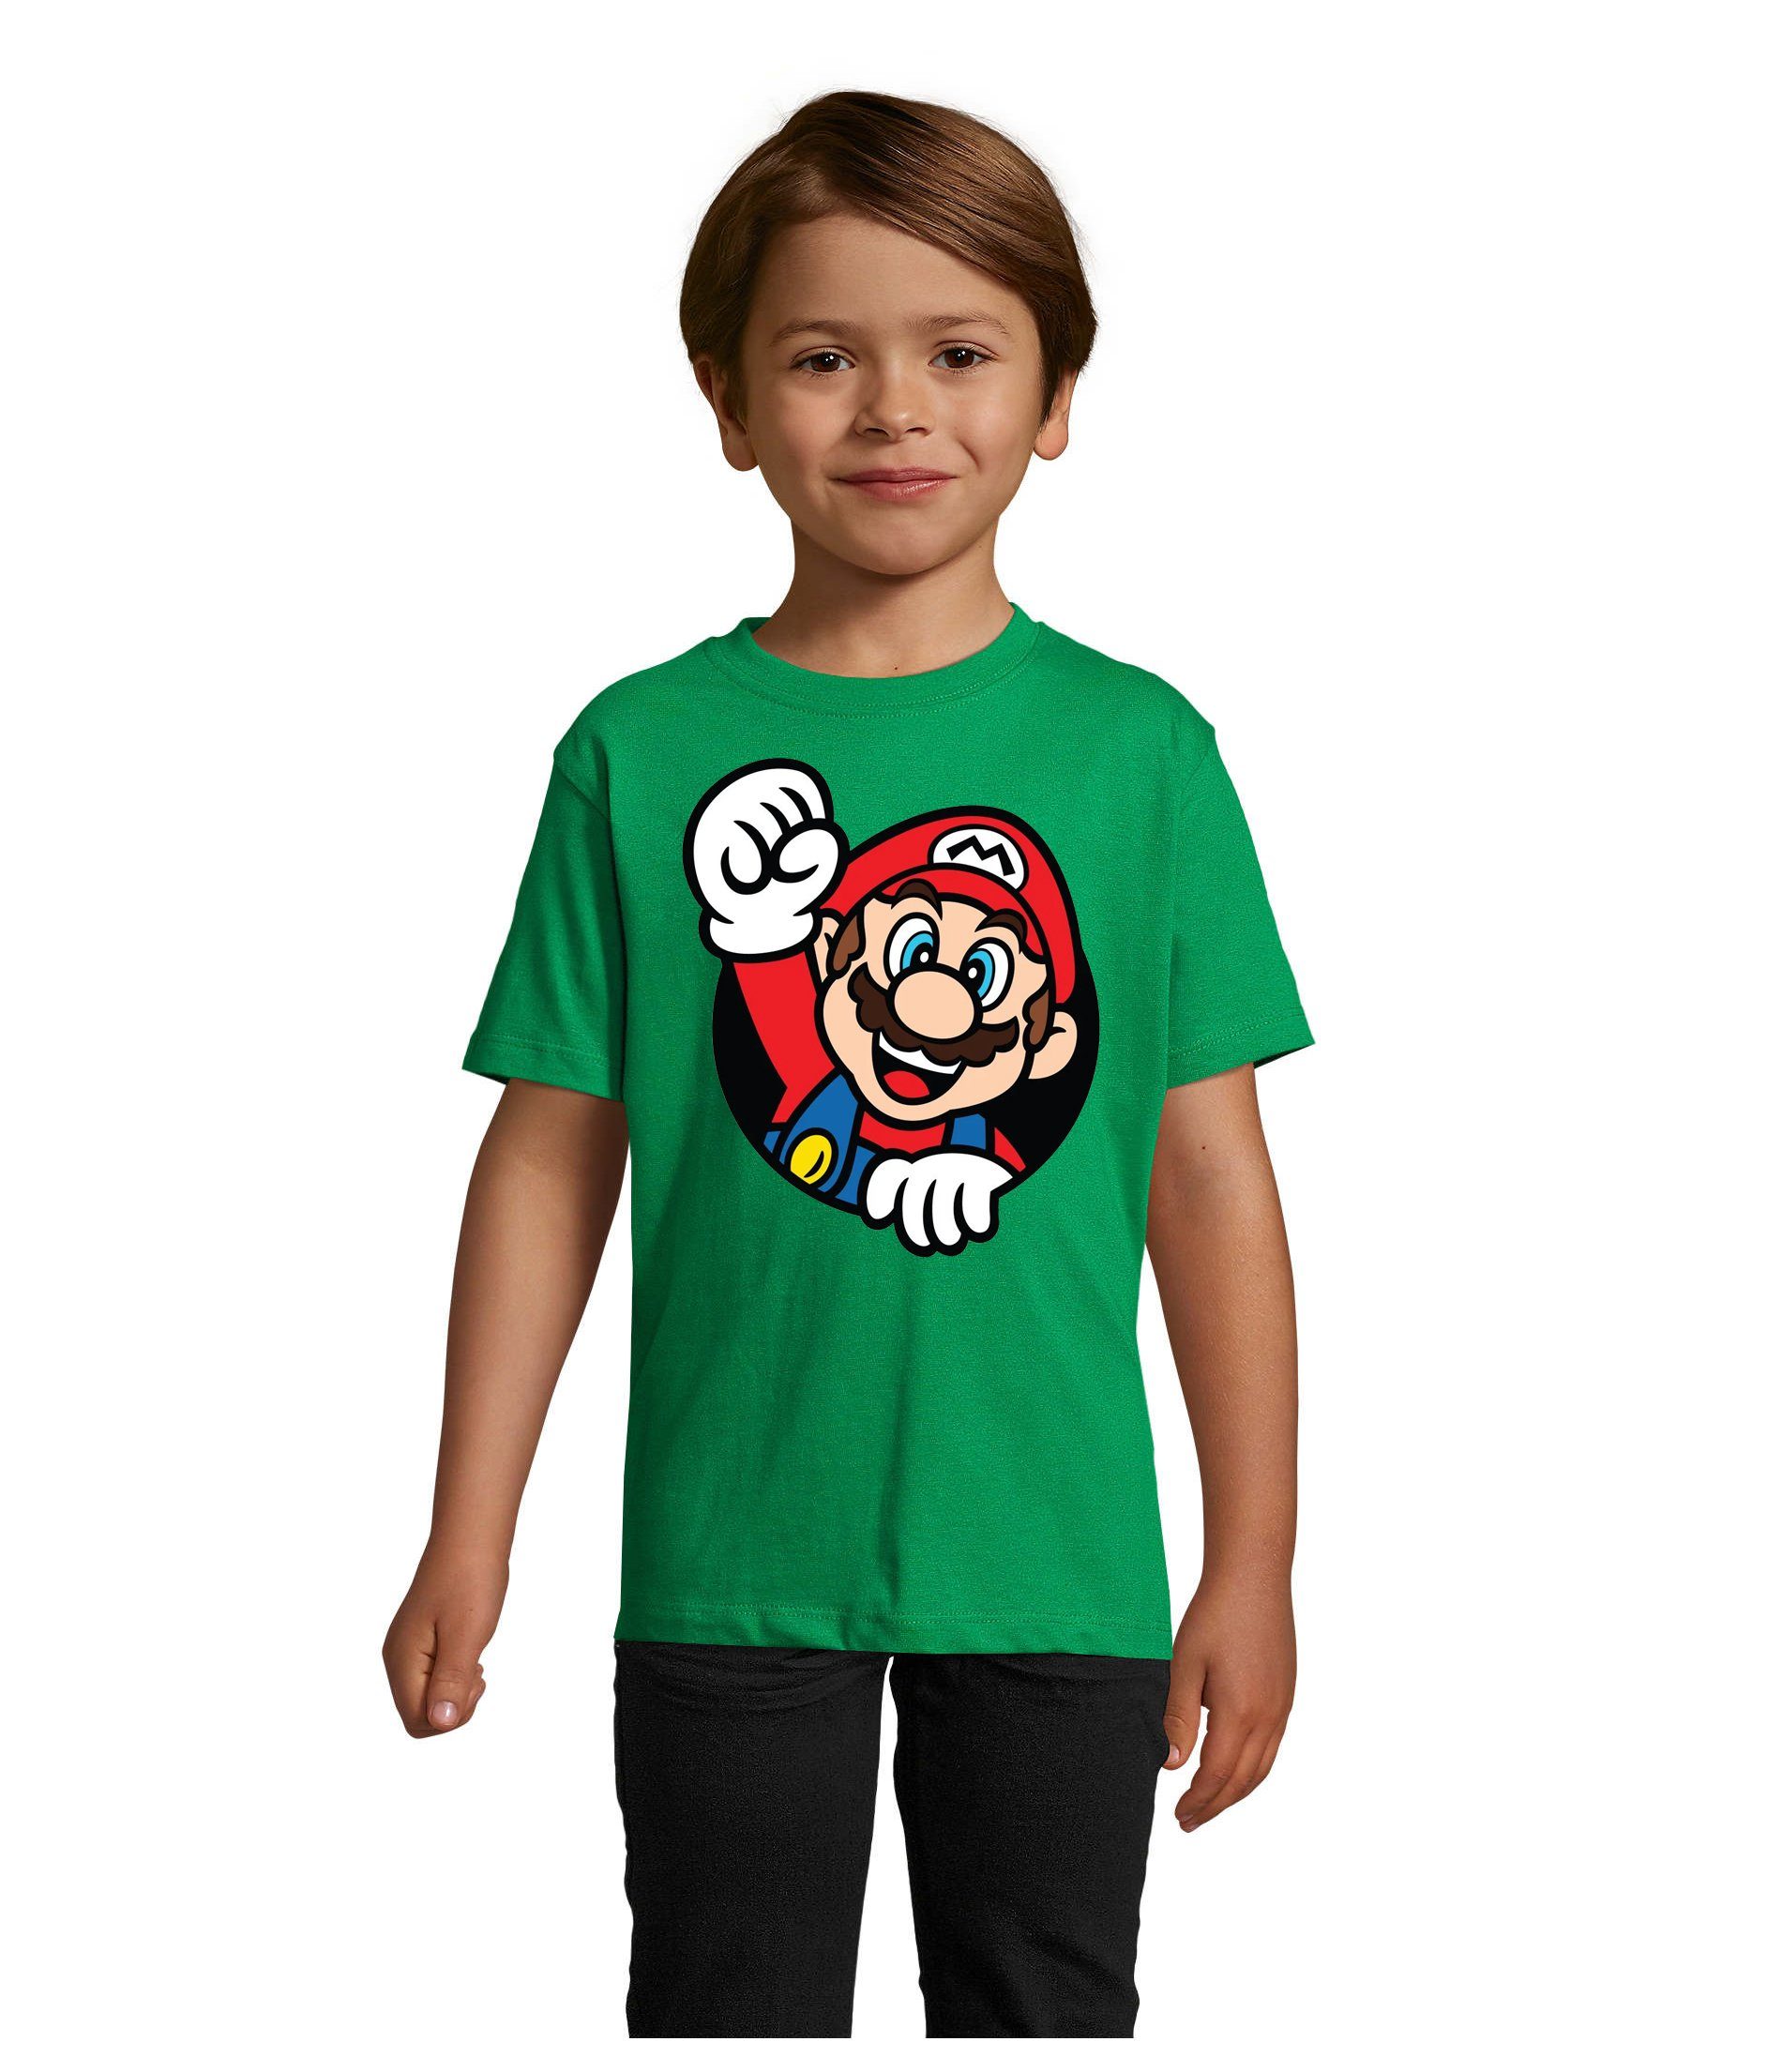 Blondie & Brownie T-Shirt Kinder Super Mario Faust Nerd Konsole Gaming Spiel Nintendo Konsole Grün